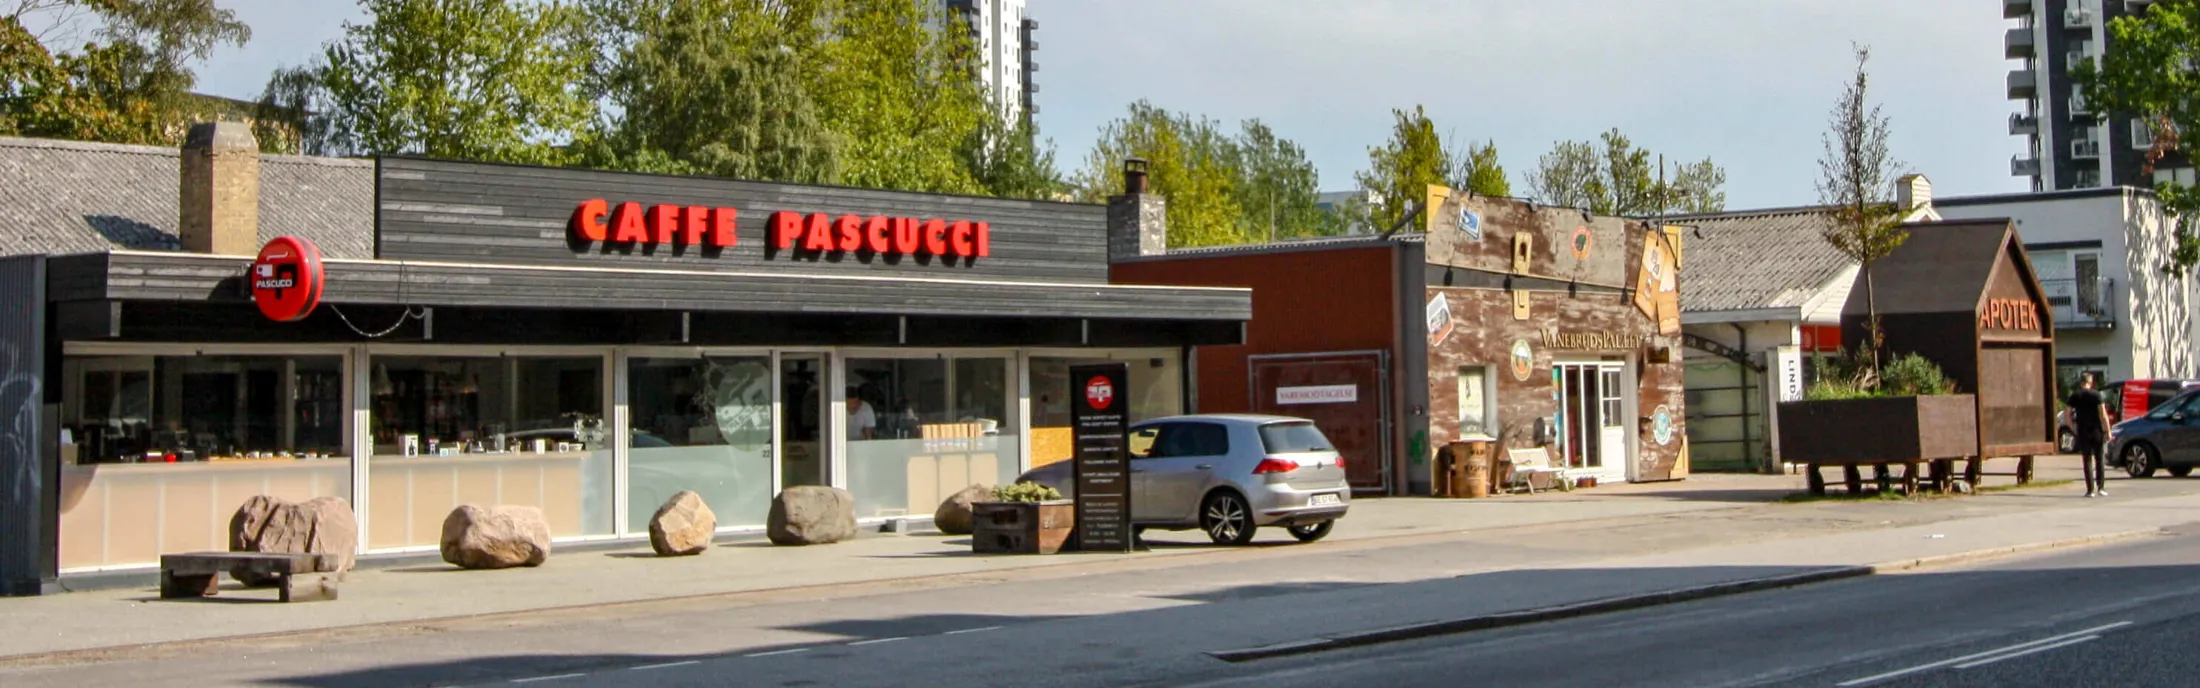 Facade Cafe Pascucci Søren Frichs Vej 20 i Åbyhøj